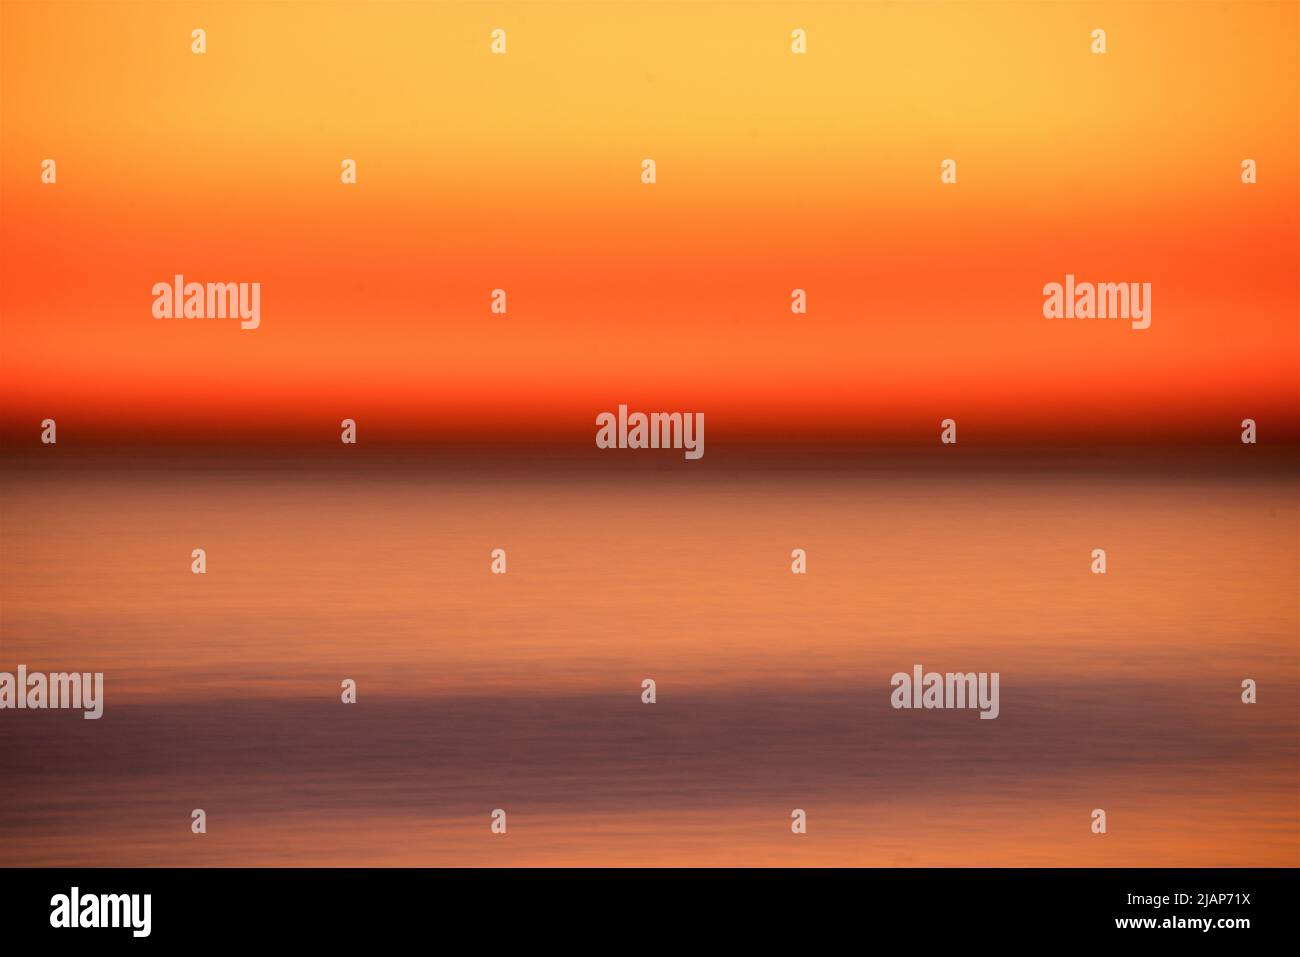 Dettaglio astratto del mare sfocato dal movimento con cielo di crepuscolo arancione sopra l'orizzonte scuro. Canale inglese, Regno Unito. Foto Stock